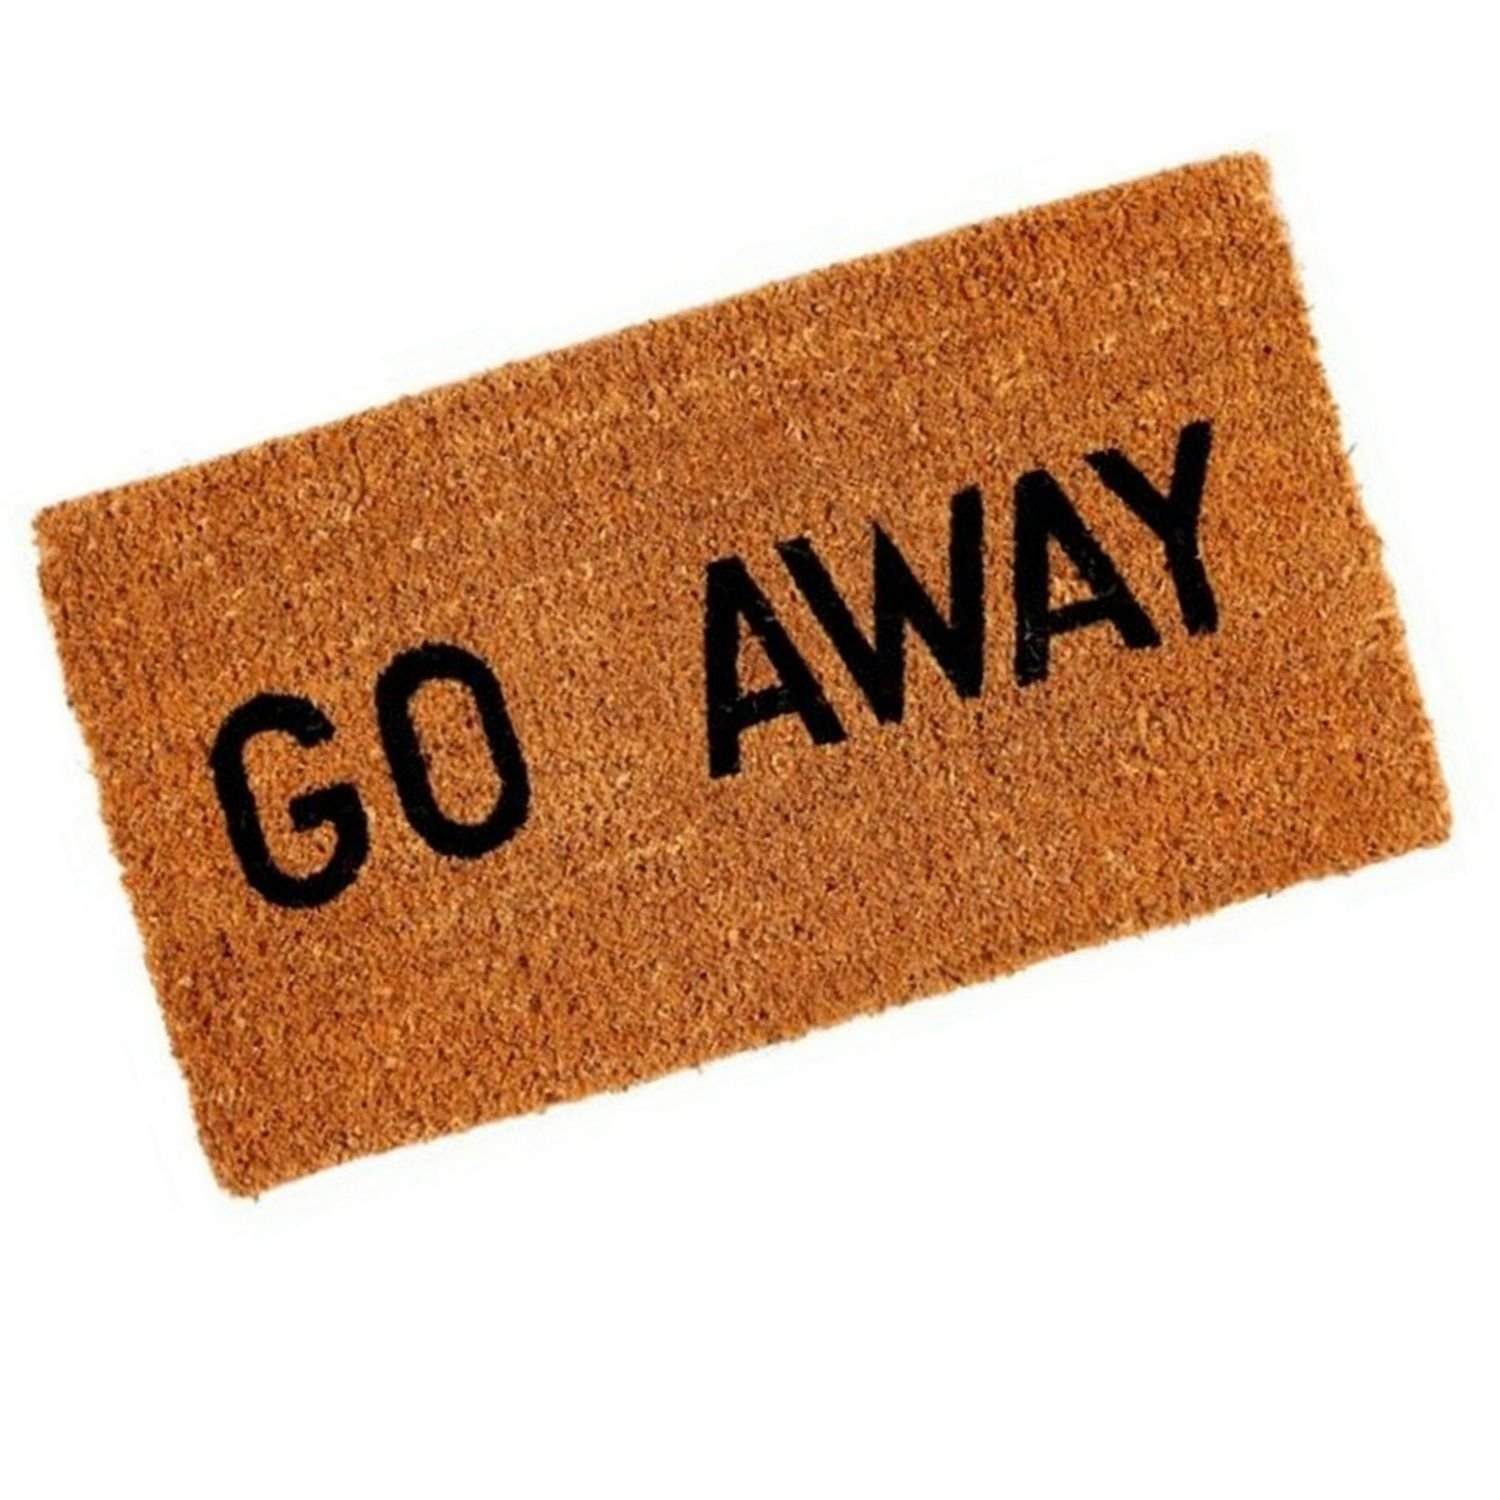 Go away картинка. Go away картинка для детей. Go away Doormat. Надпись go away. Go away more